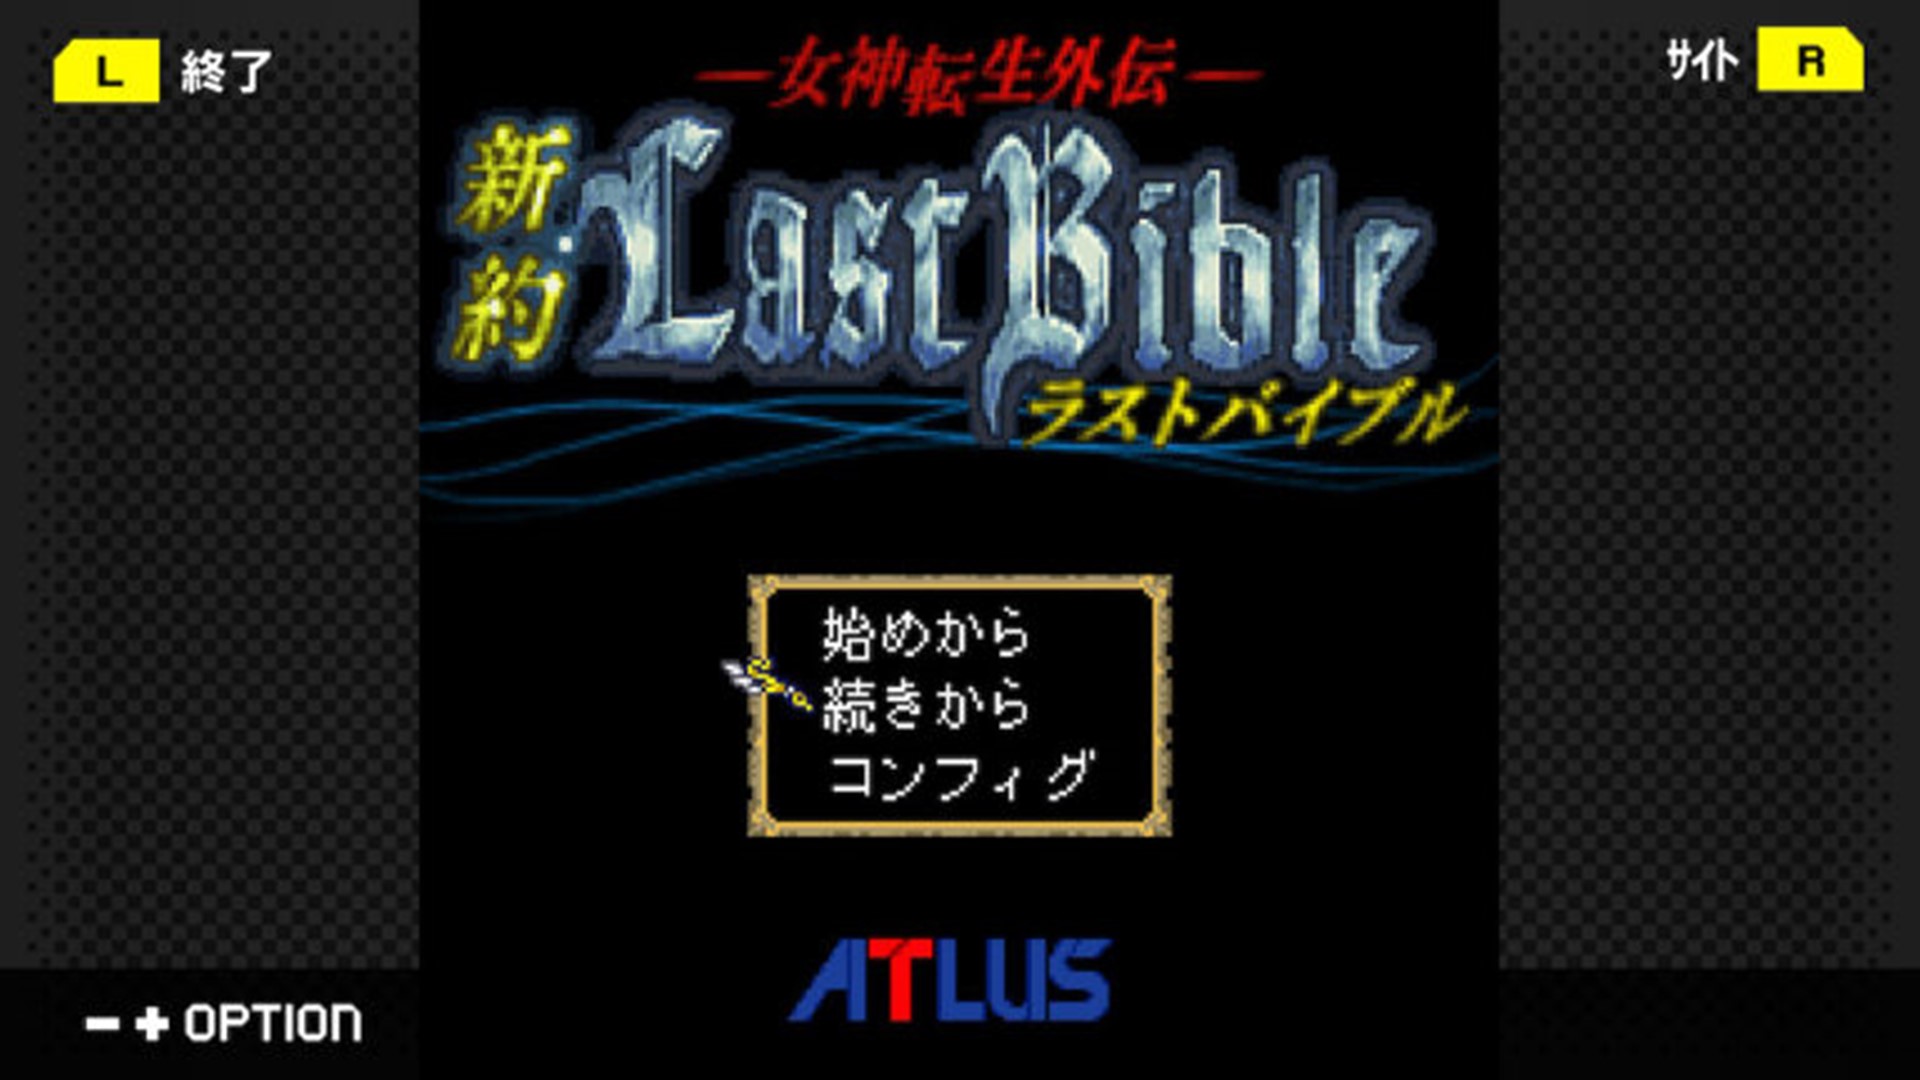 เกม Megami Tensei Gaiden: Shinyaku Last Bible วางขาย 14 กรกฎาคม นี้